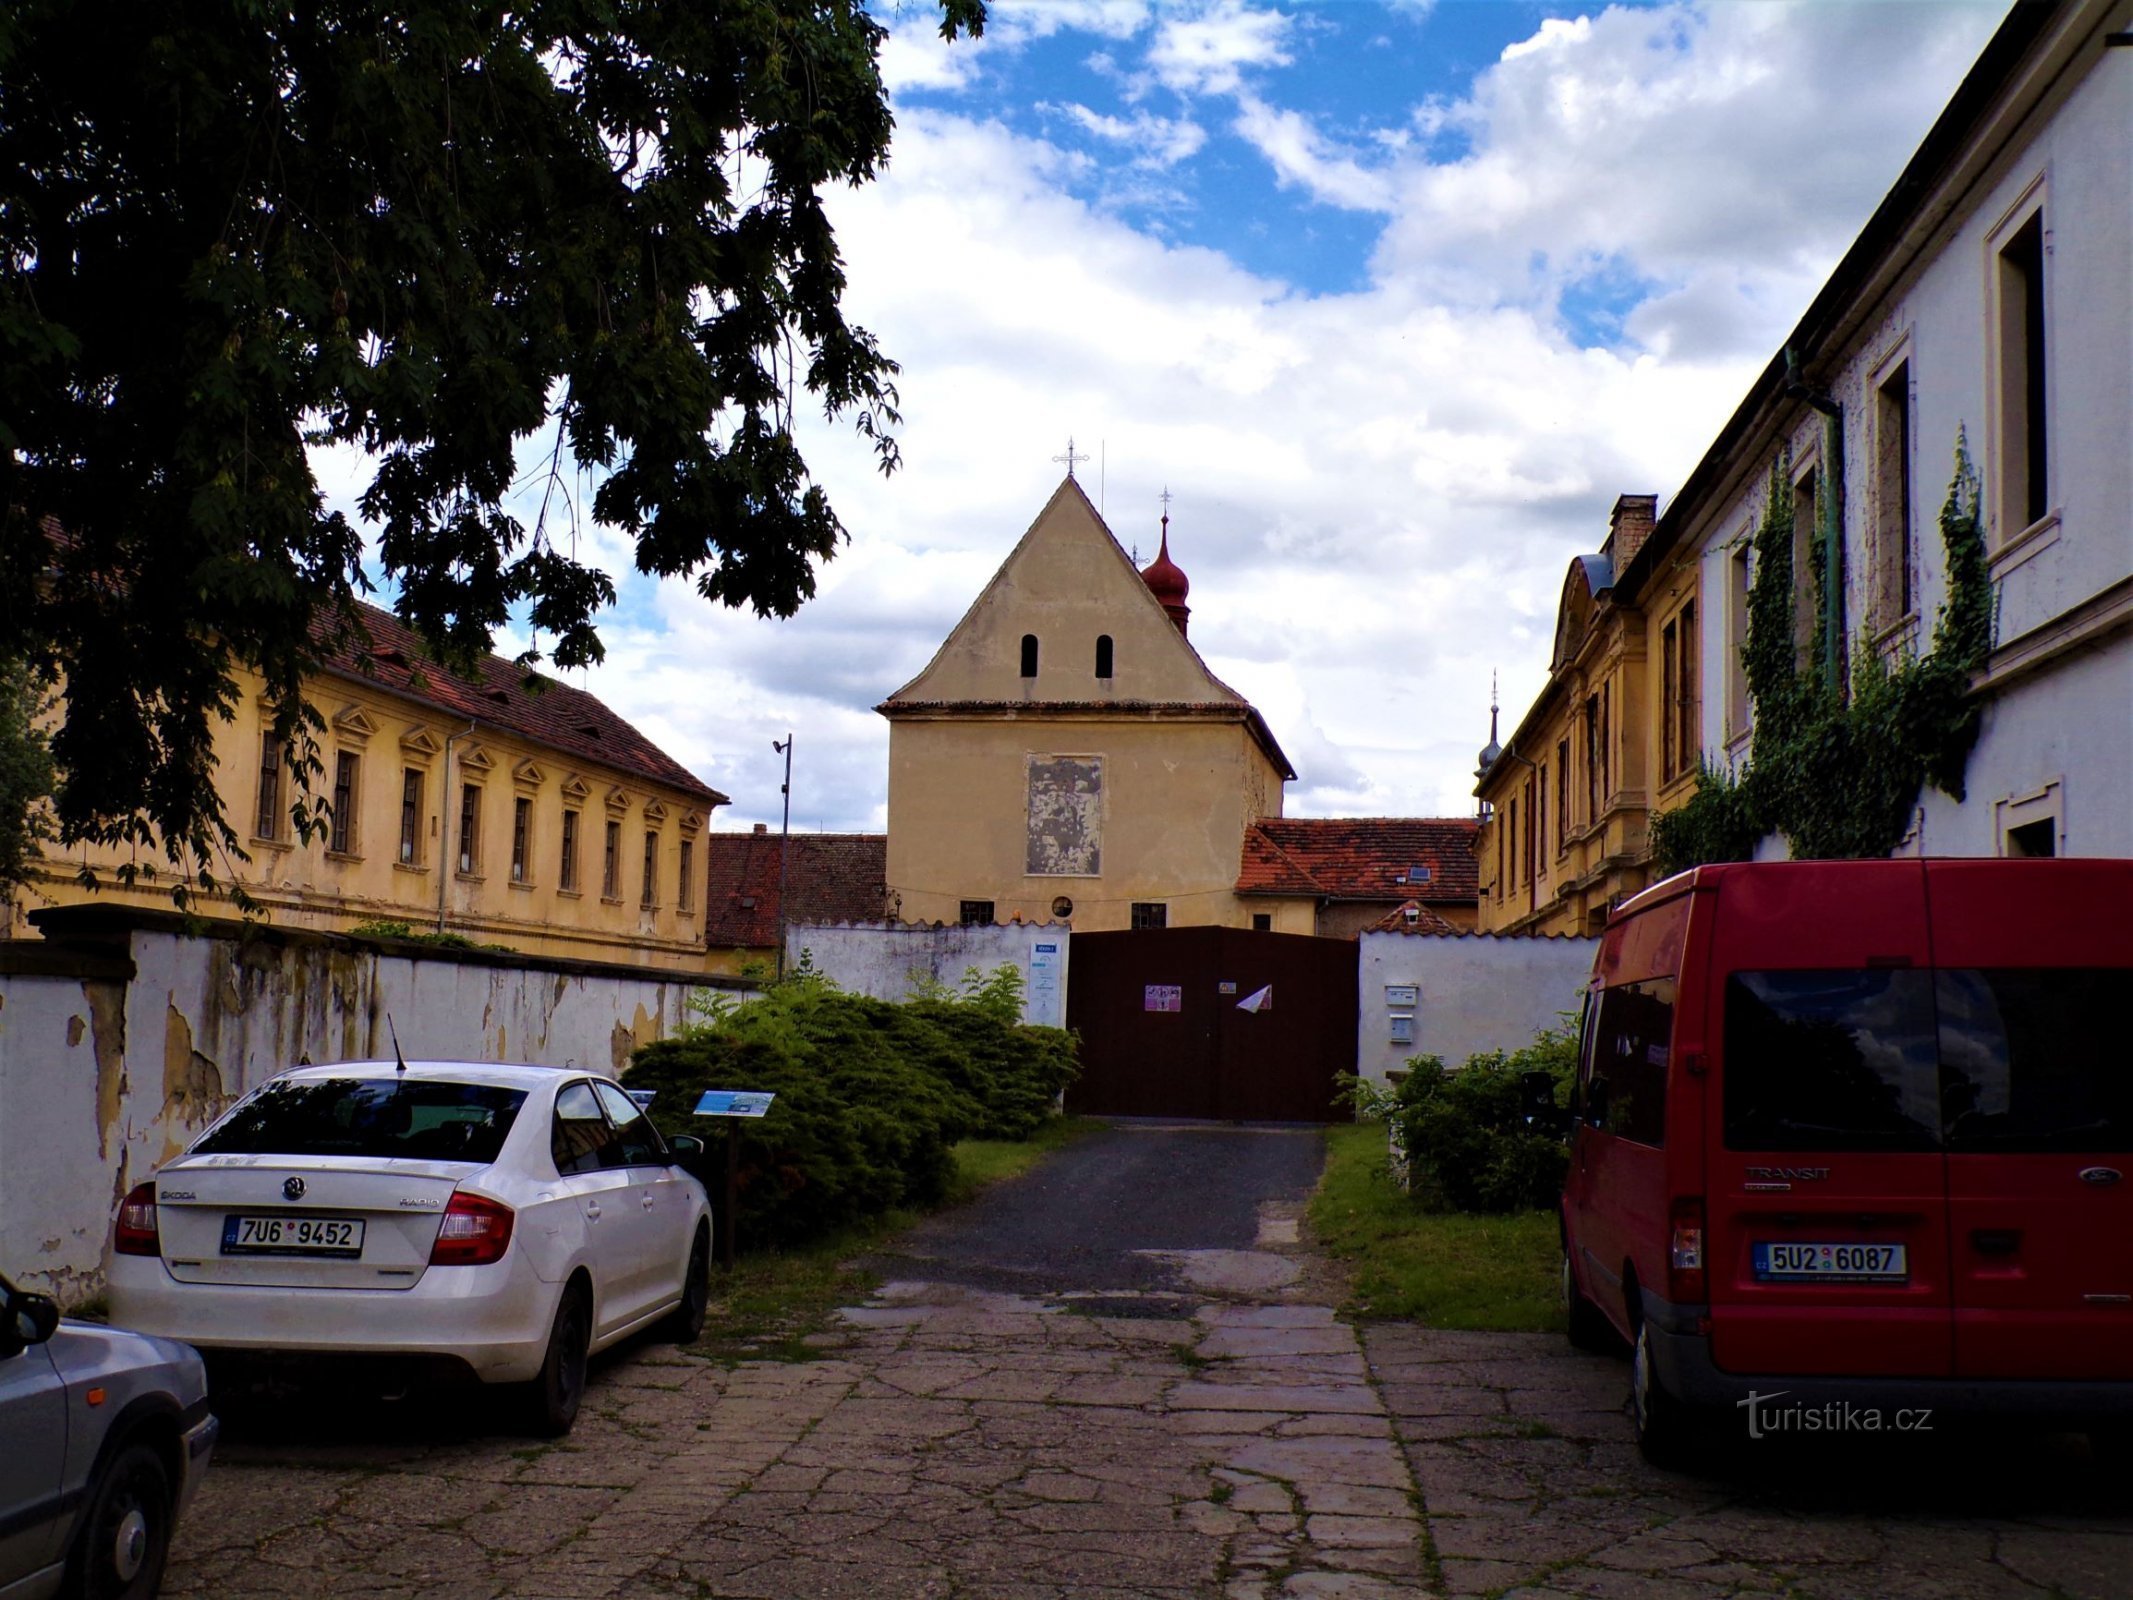 Kerk van St. Wenceslas met een deel van het voormalige kapucijnenklooster (Roudnice nad Labem, 9.7.2021 juli XNUMX)